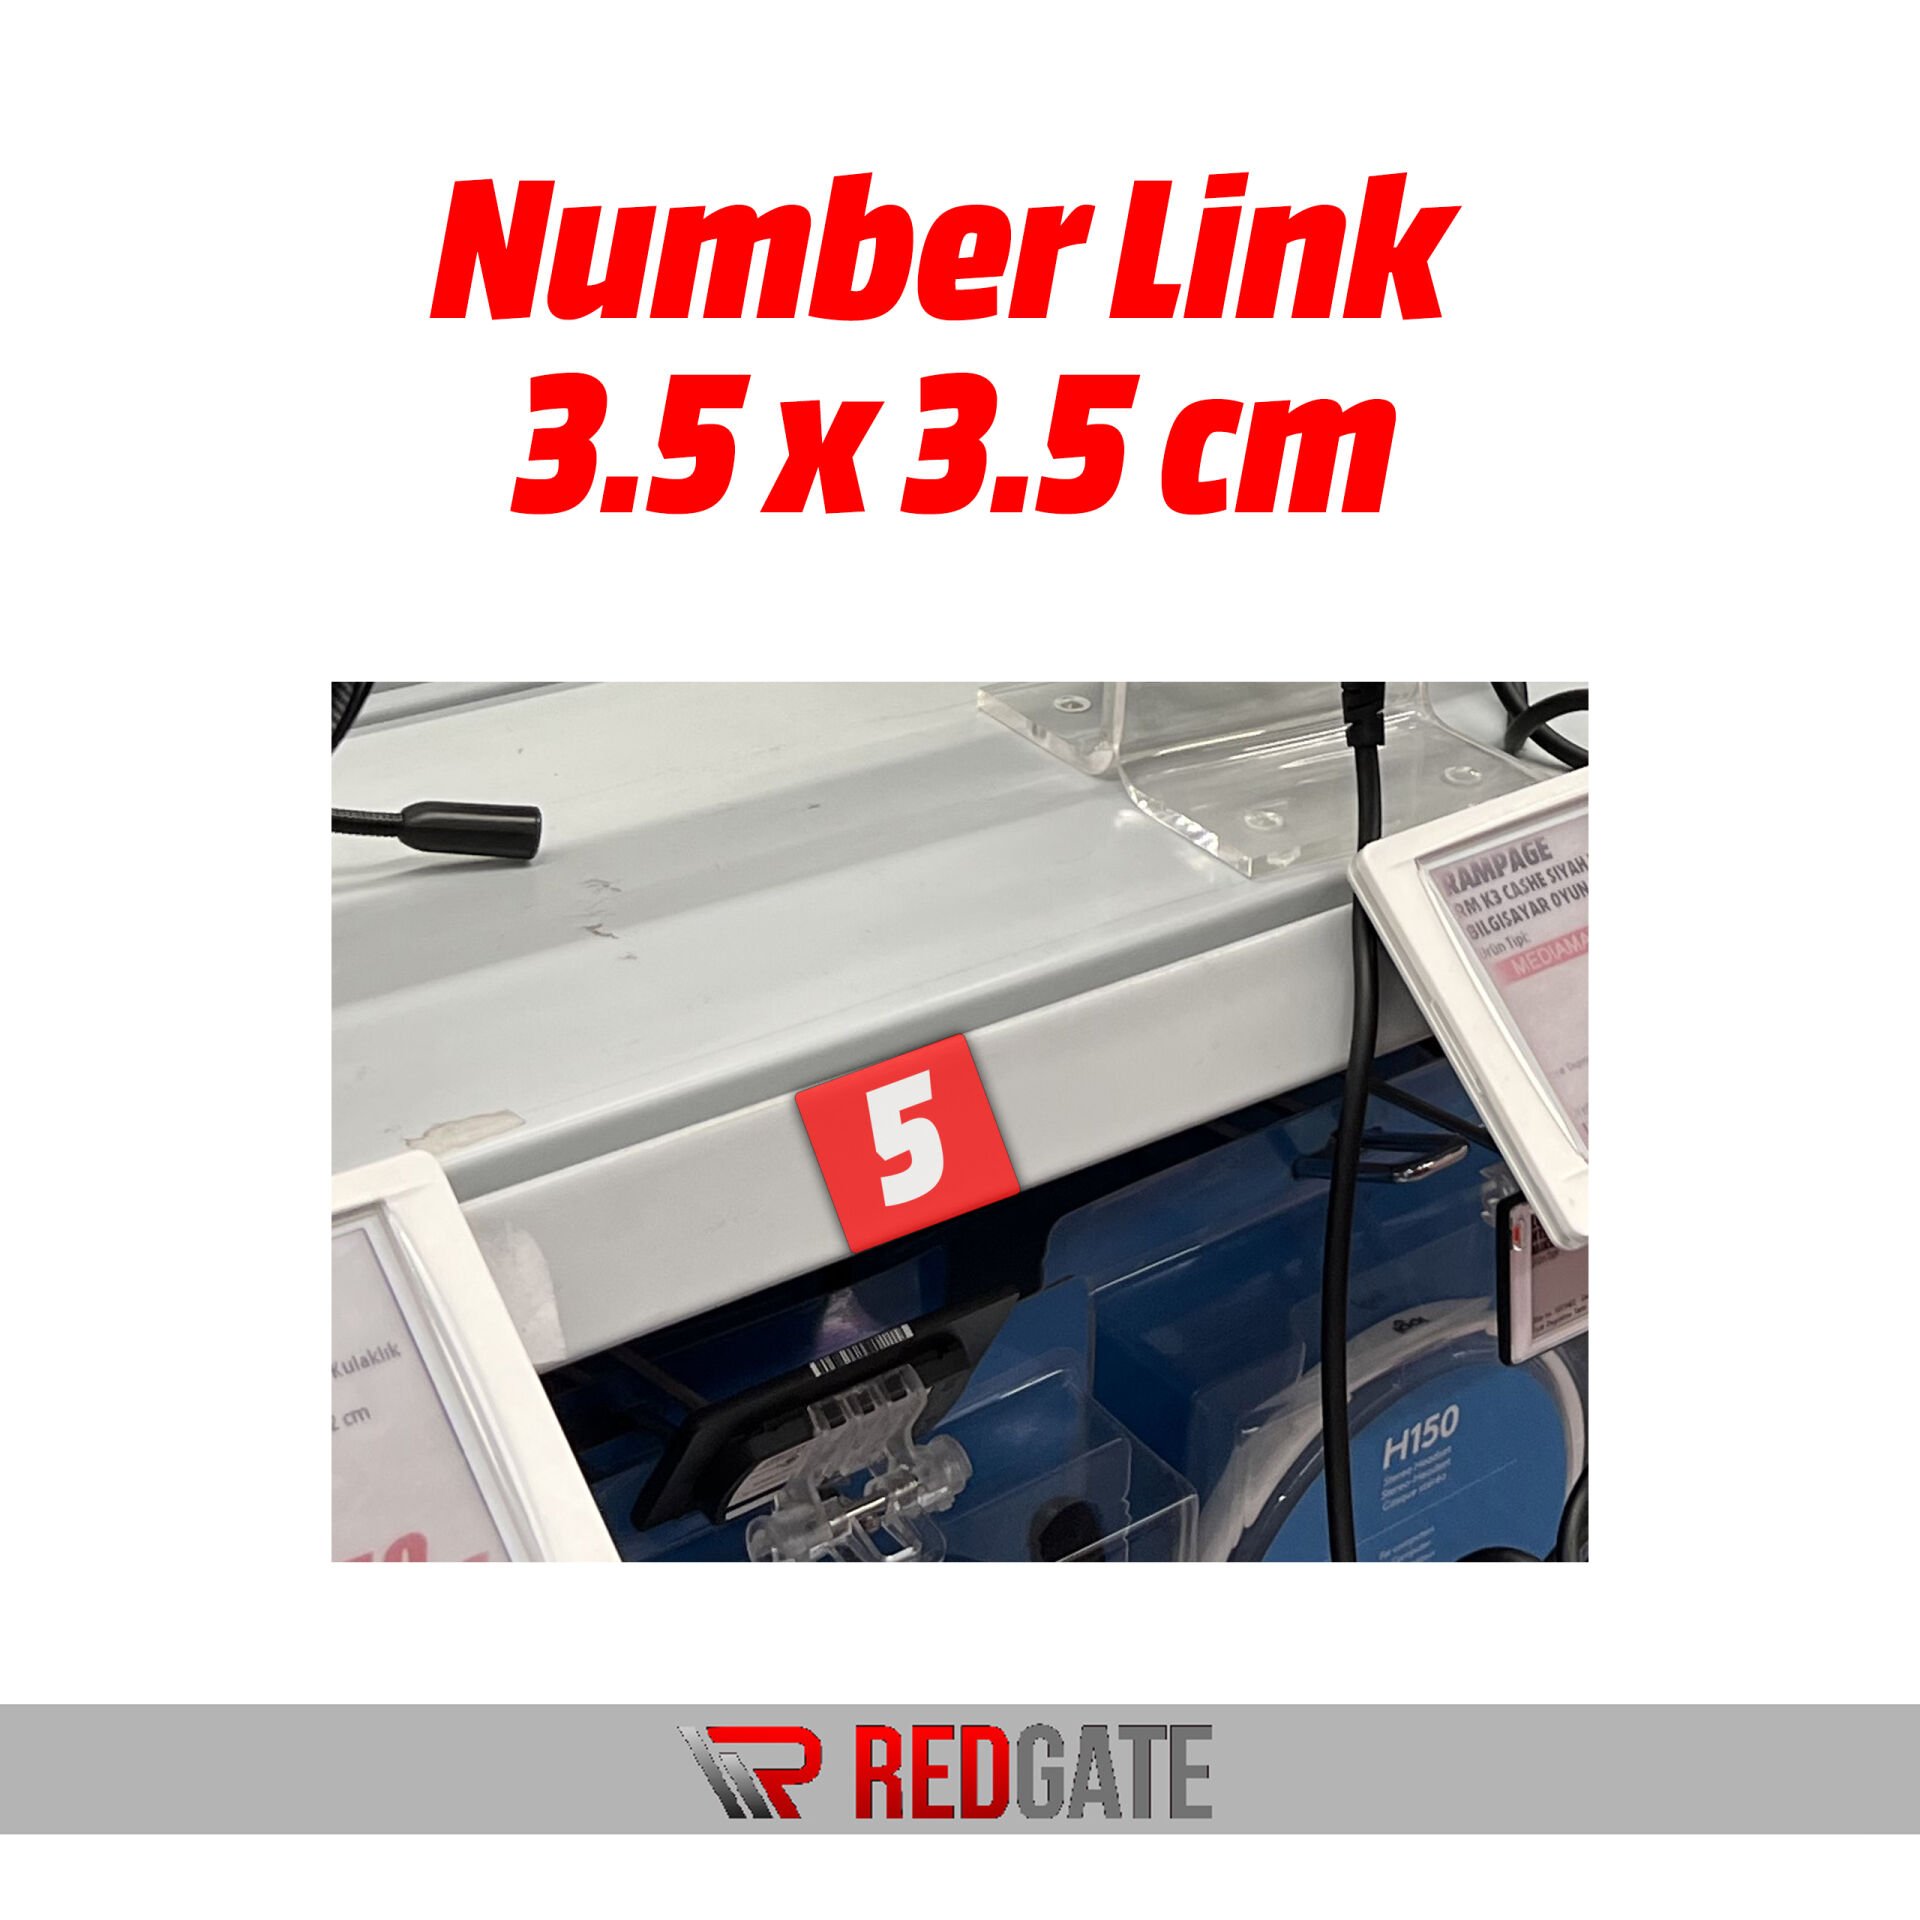 Number Link 3.5 x 3.5 cm